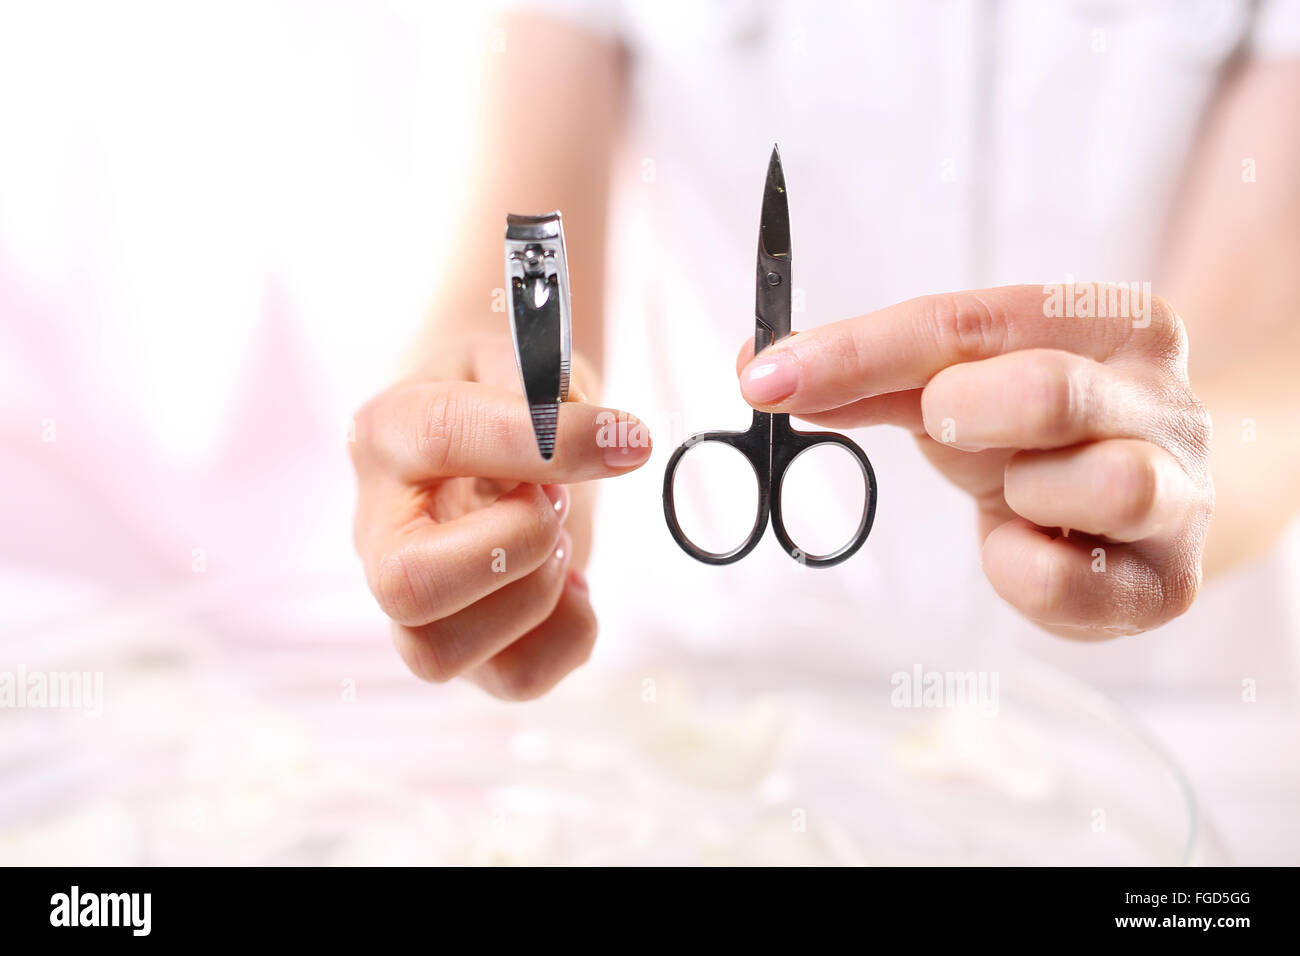 Maniküre, Nagel-Clipping. Maniküre Instrumente. Schere oder Haarschneidemaschine?. Clipping Nägel, Handpflege. Nagel styling Stockfoto